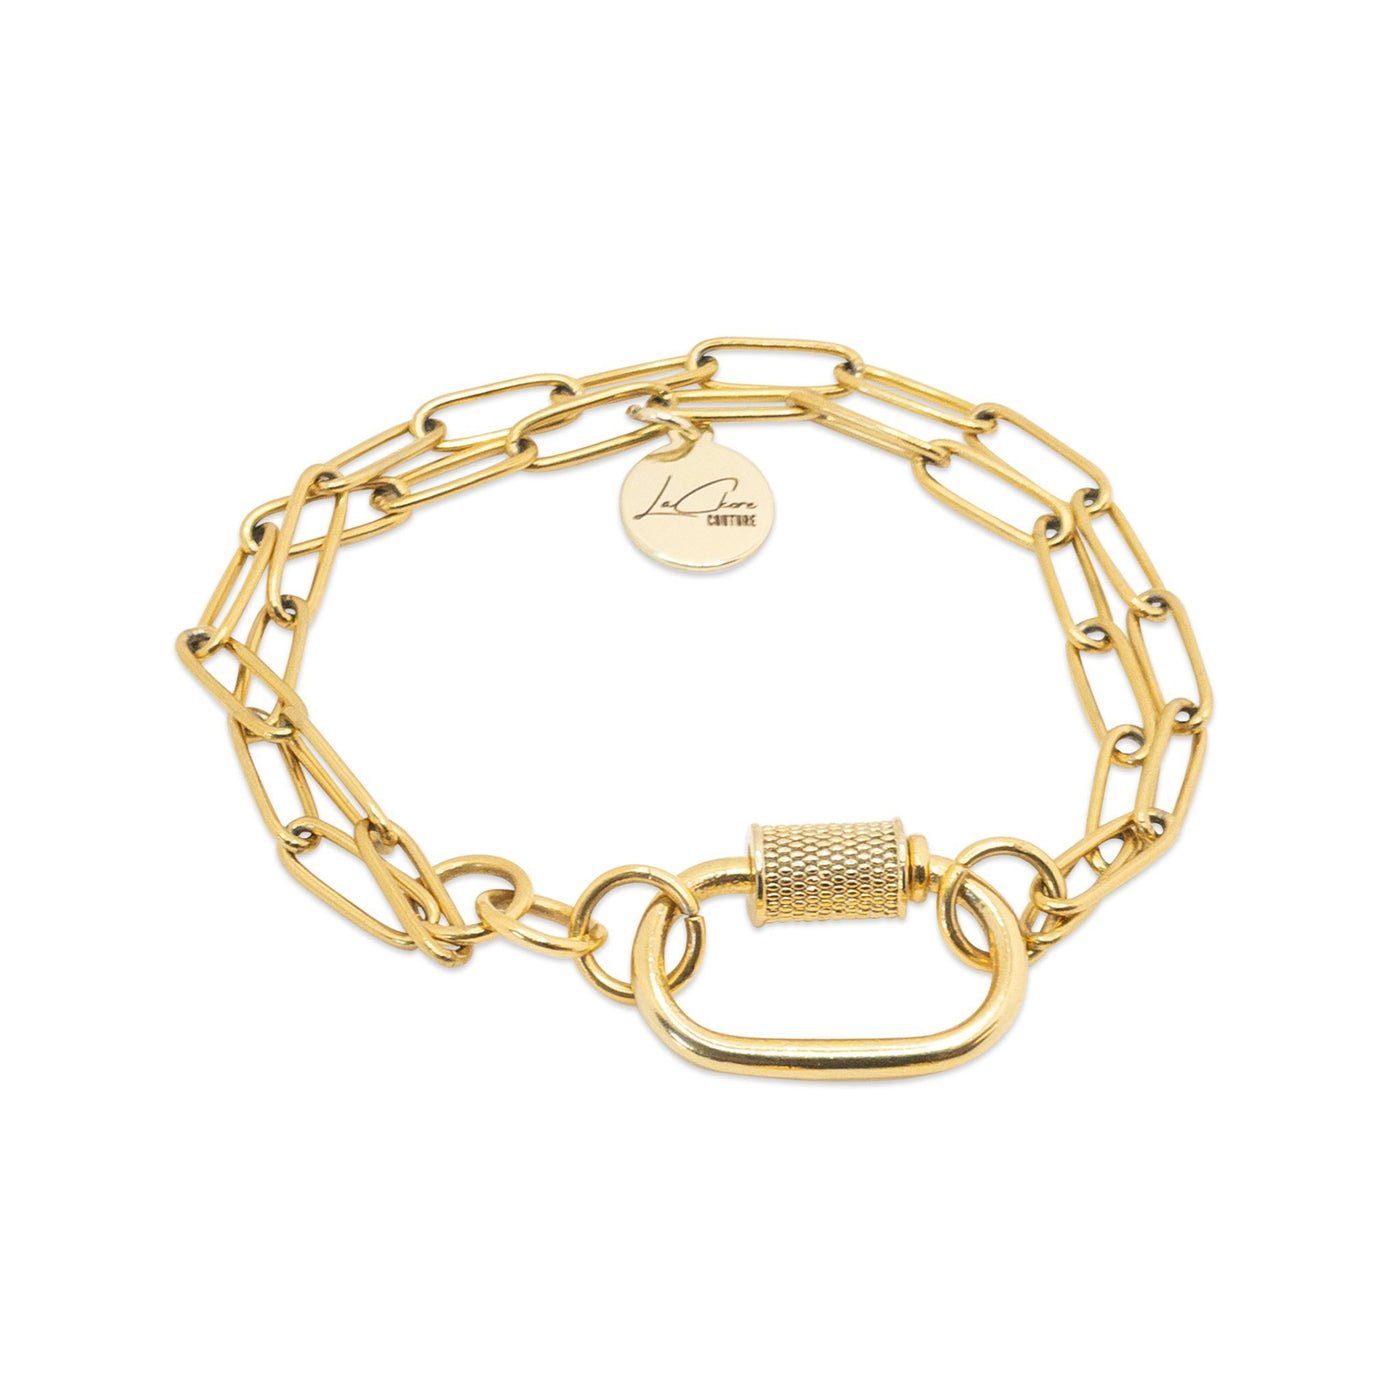 Silver Bracelets - LaCkore Couture